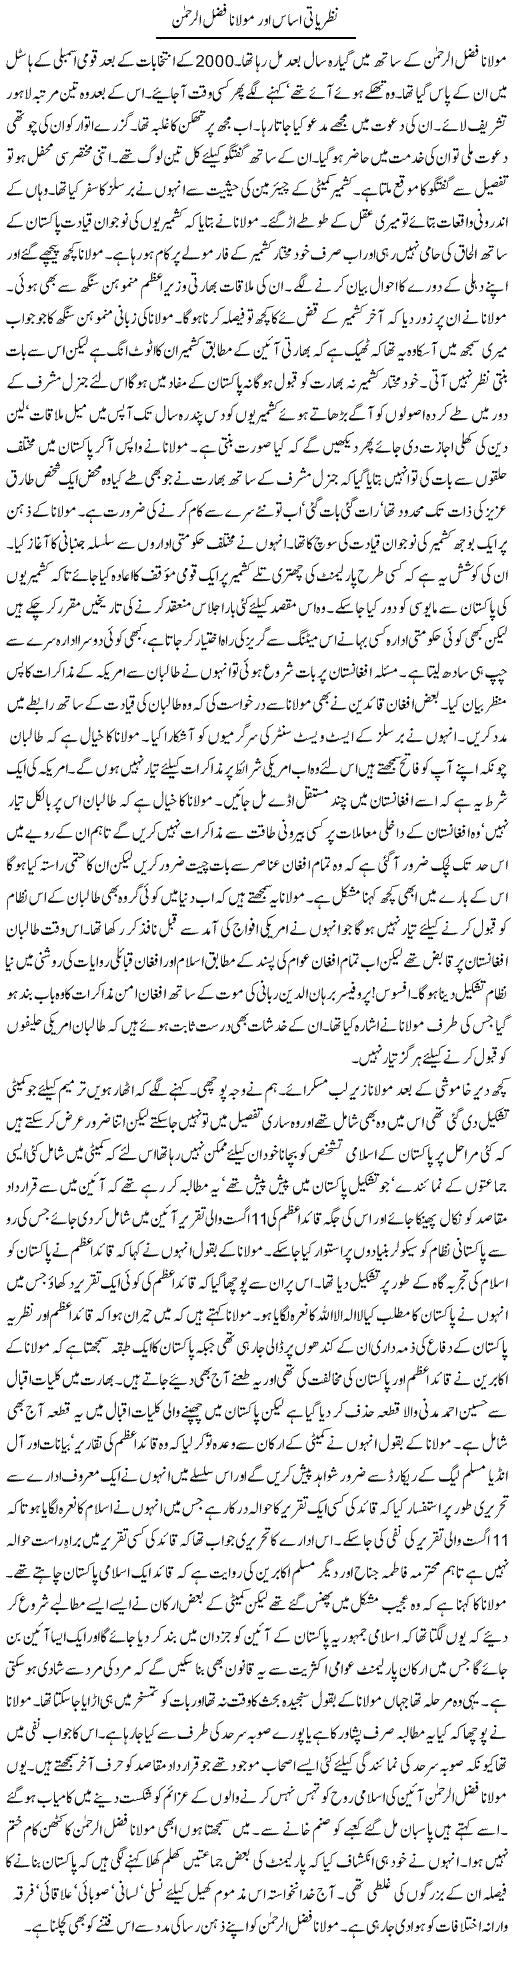 Maulana Fazlur Rehman Express Column Asadullah Ghalib 22 September 2011